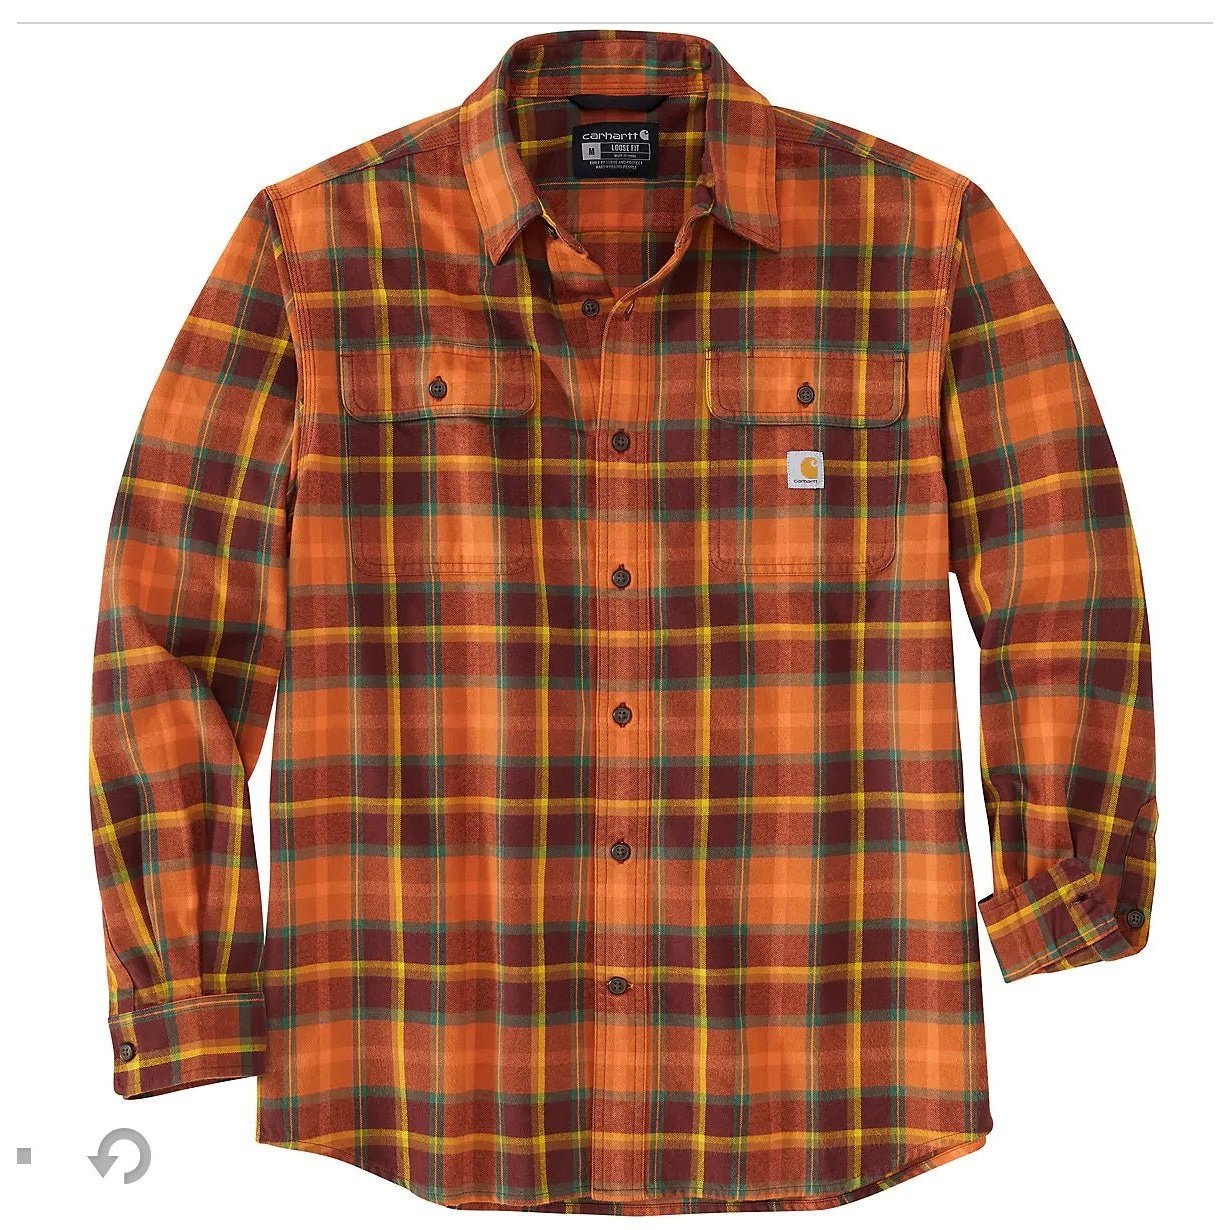 Carhartt Men’s Shirt Loose Fit Long Sleeve Heavyweight Flannel Plaid 105439 - Carhartt